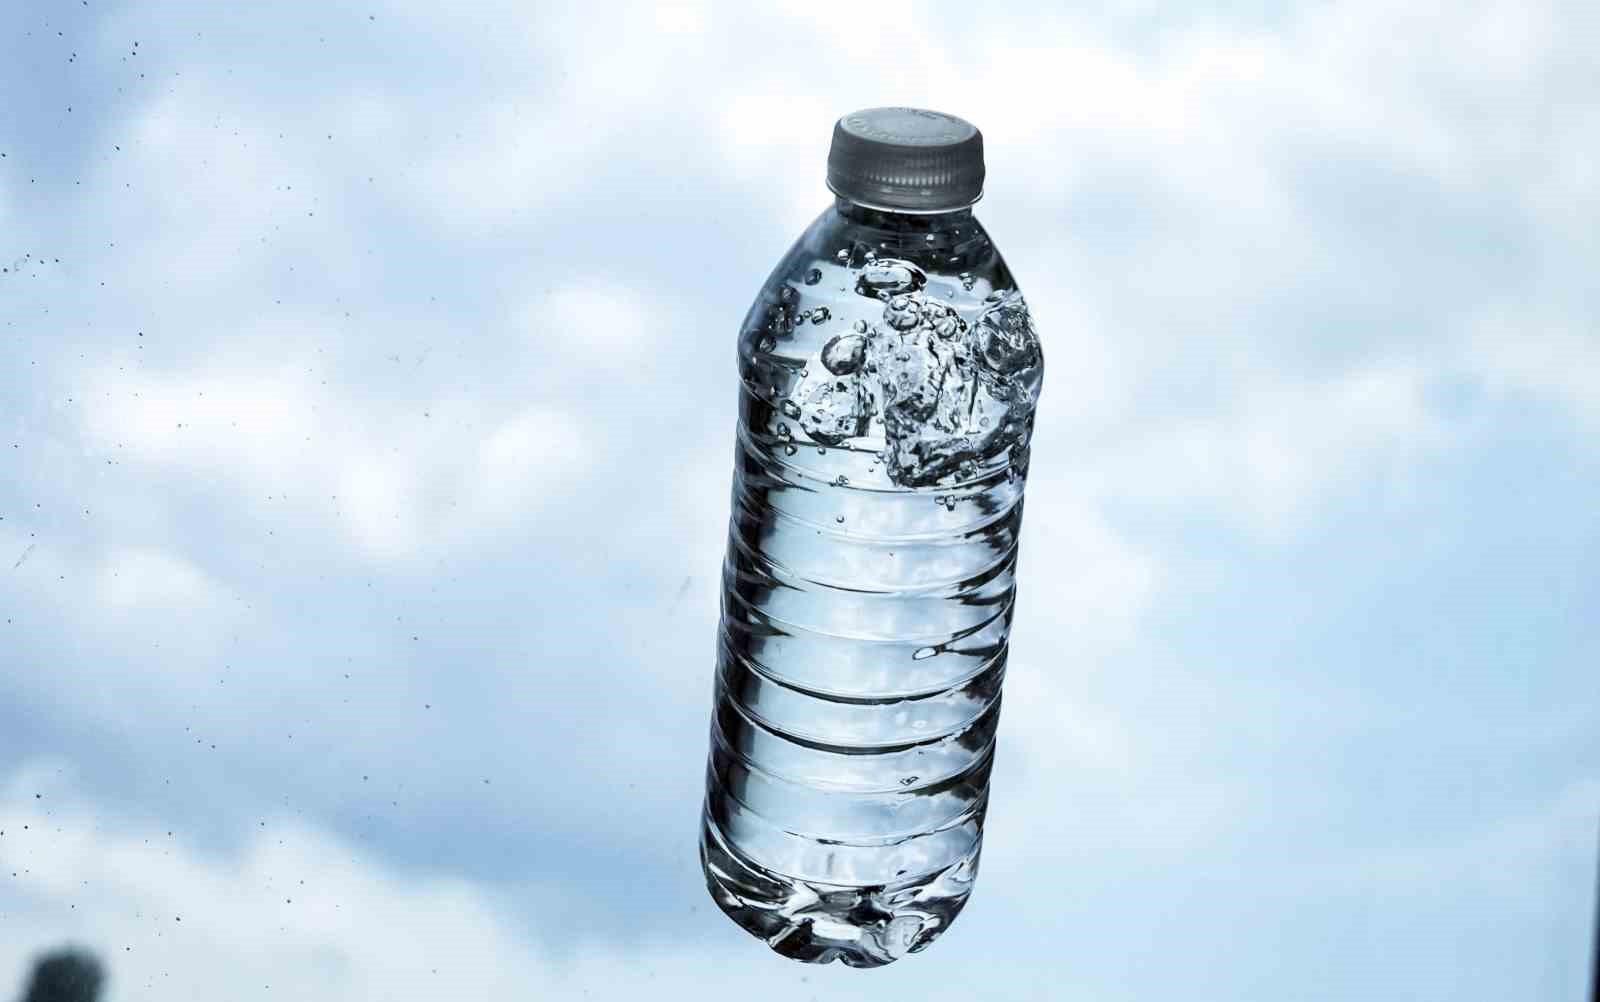 İstanbul’da yarım litrelik pet şişe suyun fiyatı 10 lira oldu
